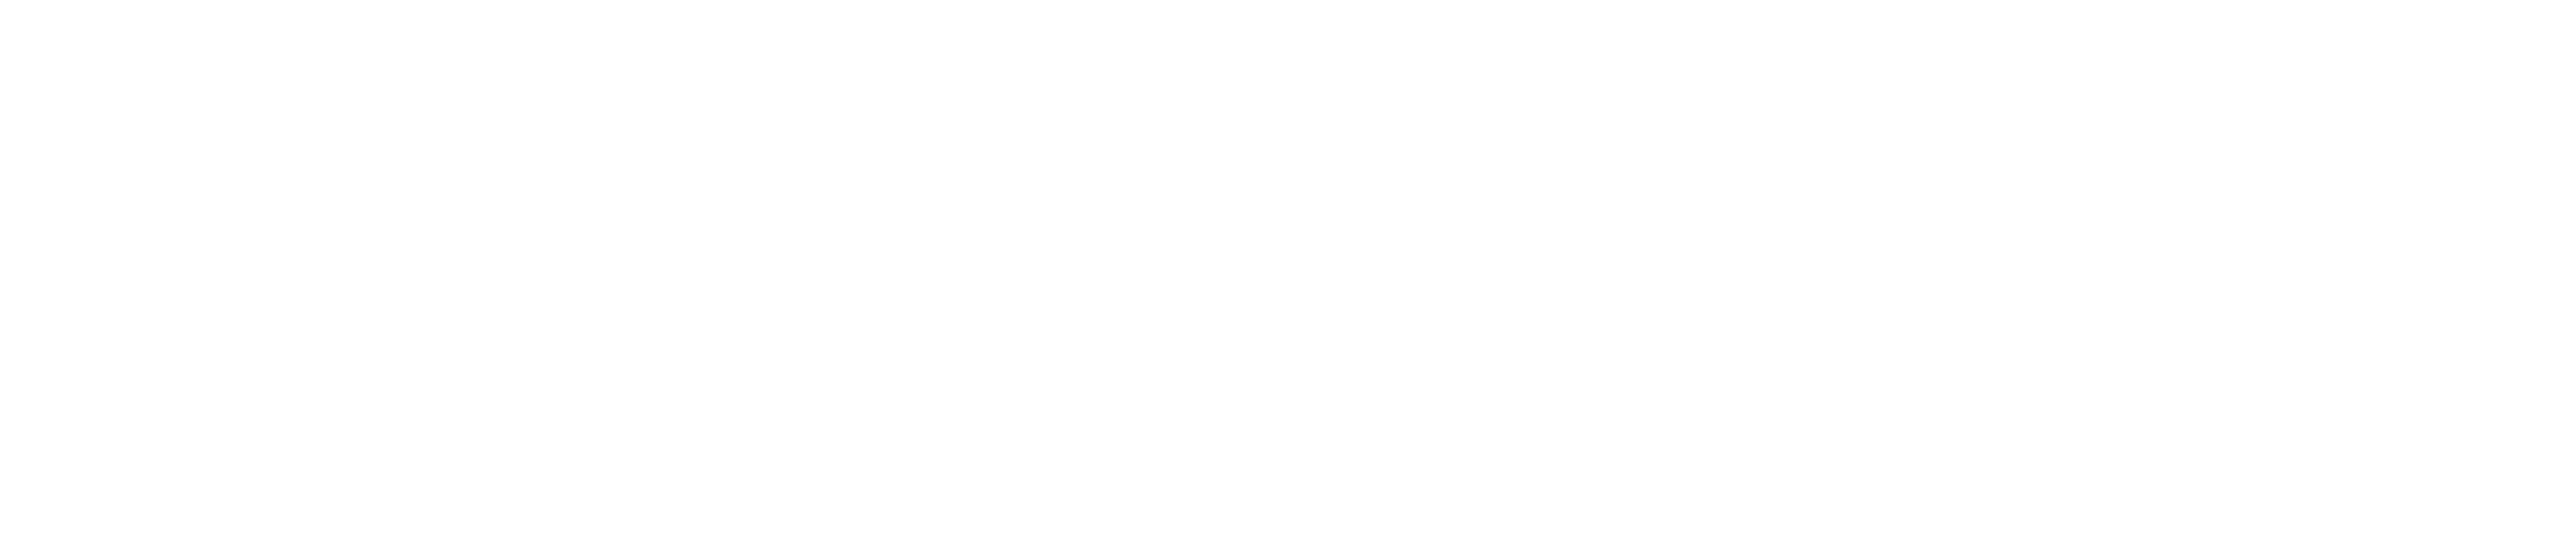 IT-X-TREME